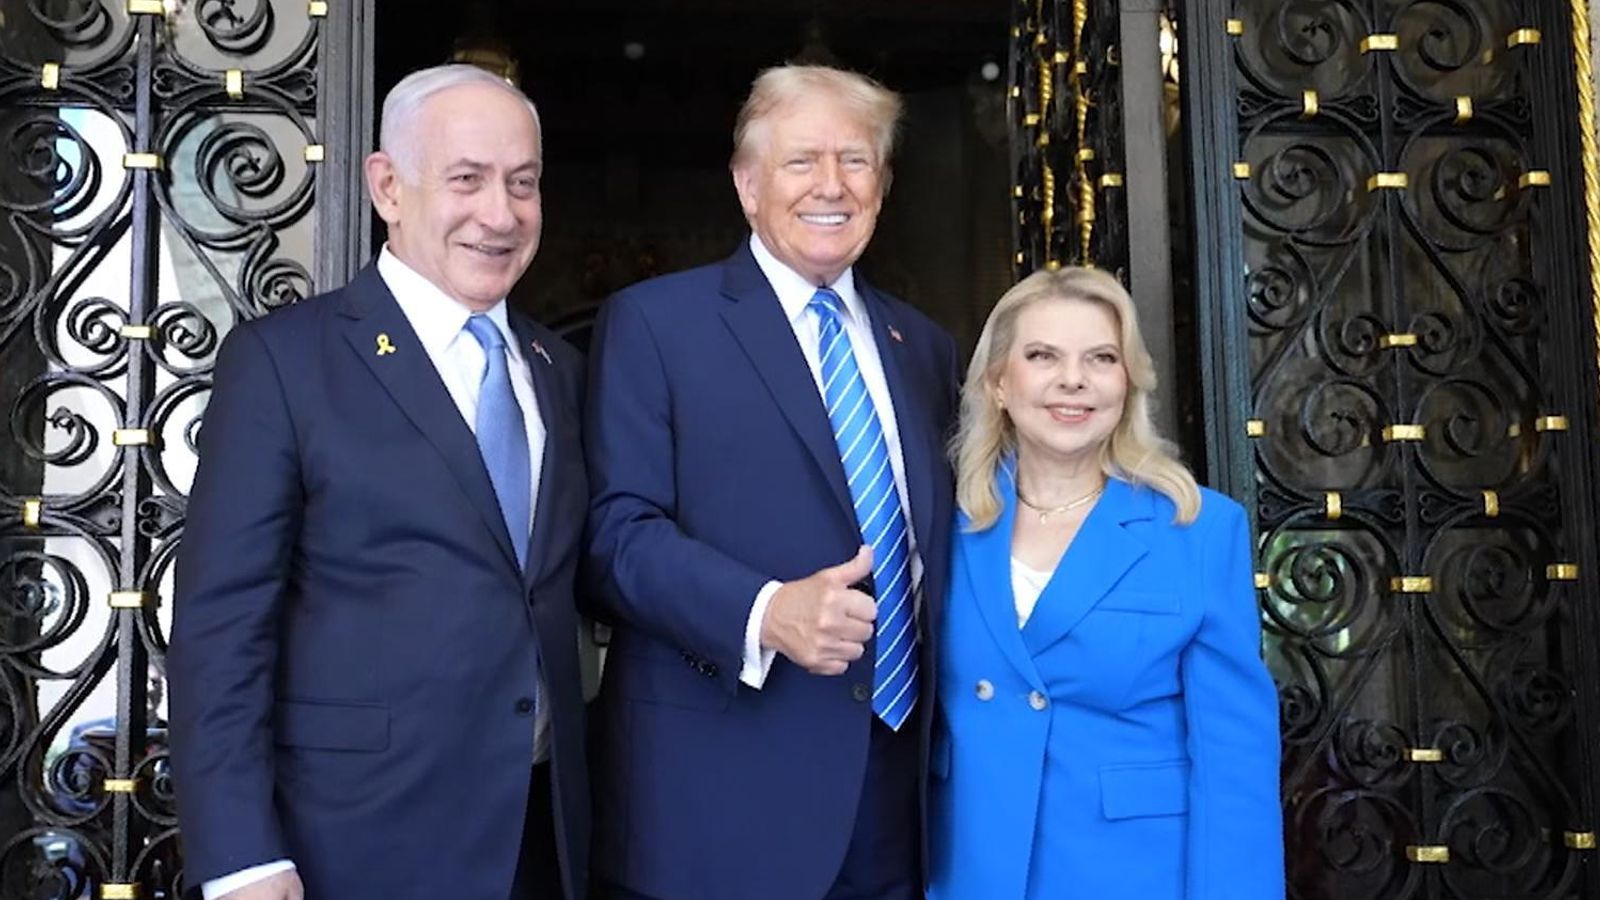 Trump attacca i commenti “irrispettosi” di Kamala Harris su Gaza mentre ospitava Netanyahu a Mar-a-Lago |  Notizie dagli Stati Uniti